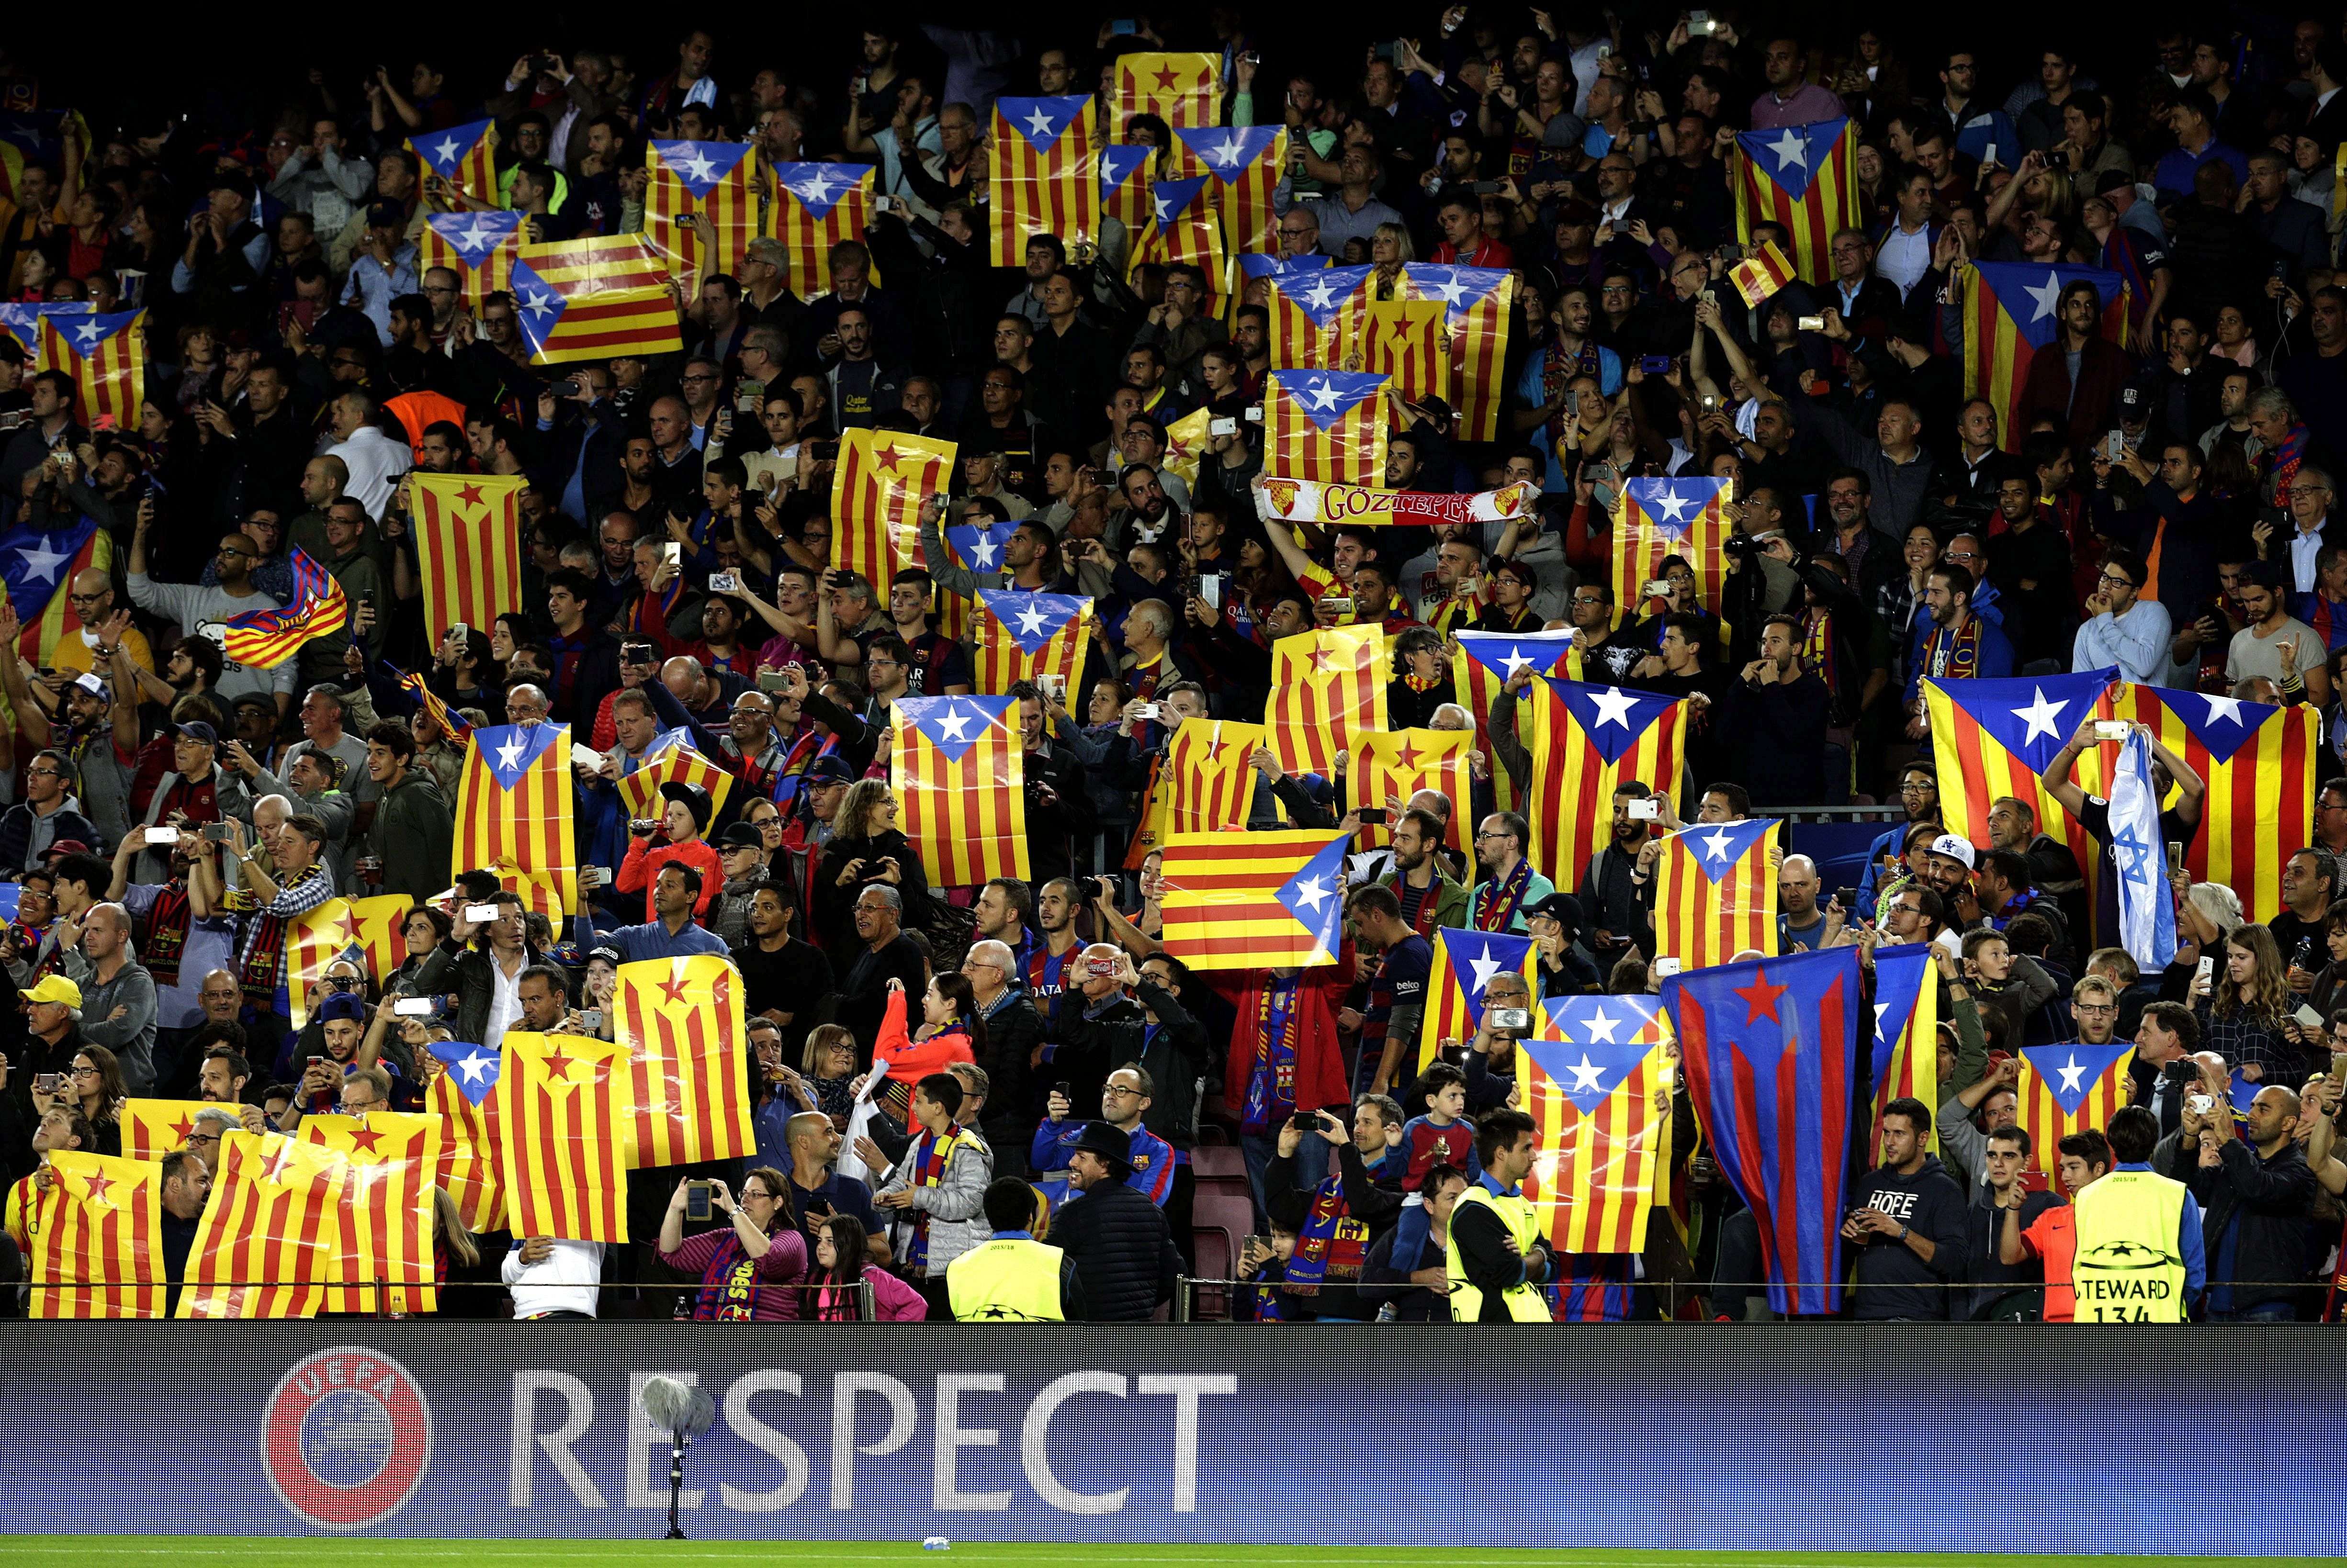 Acord entre el Barça i la UEFA per legalitzar les estelades